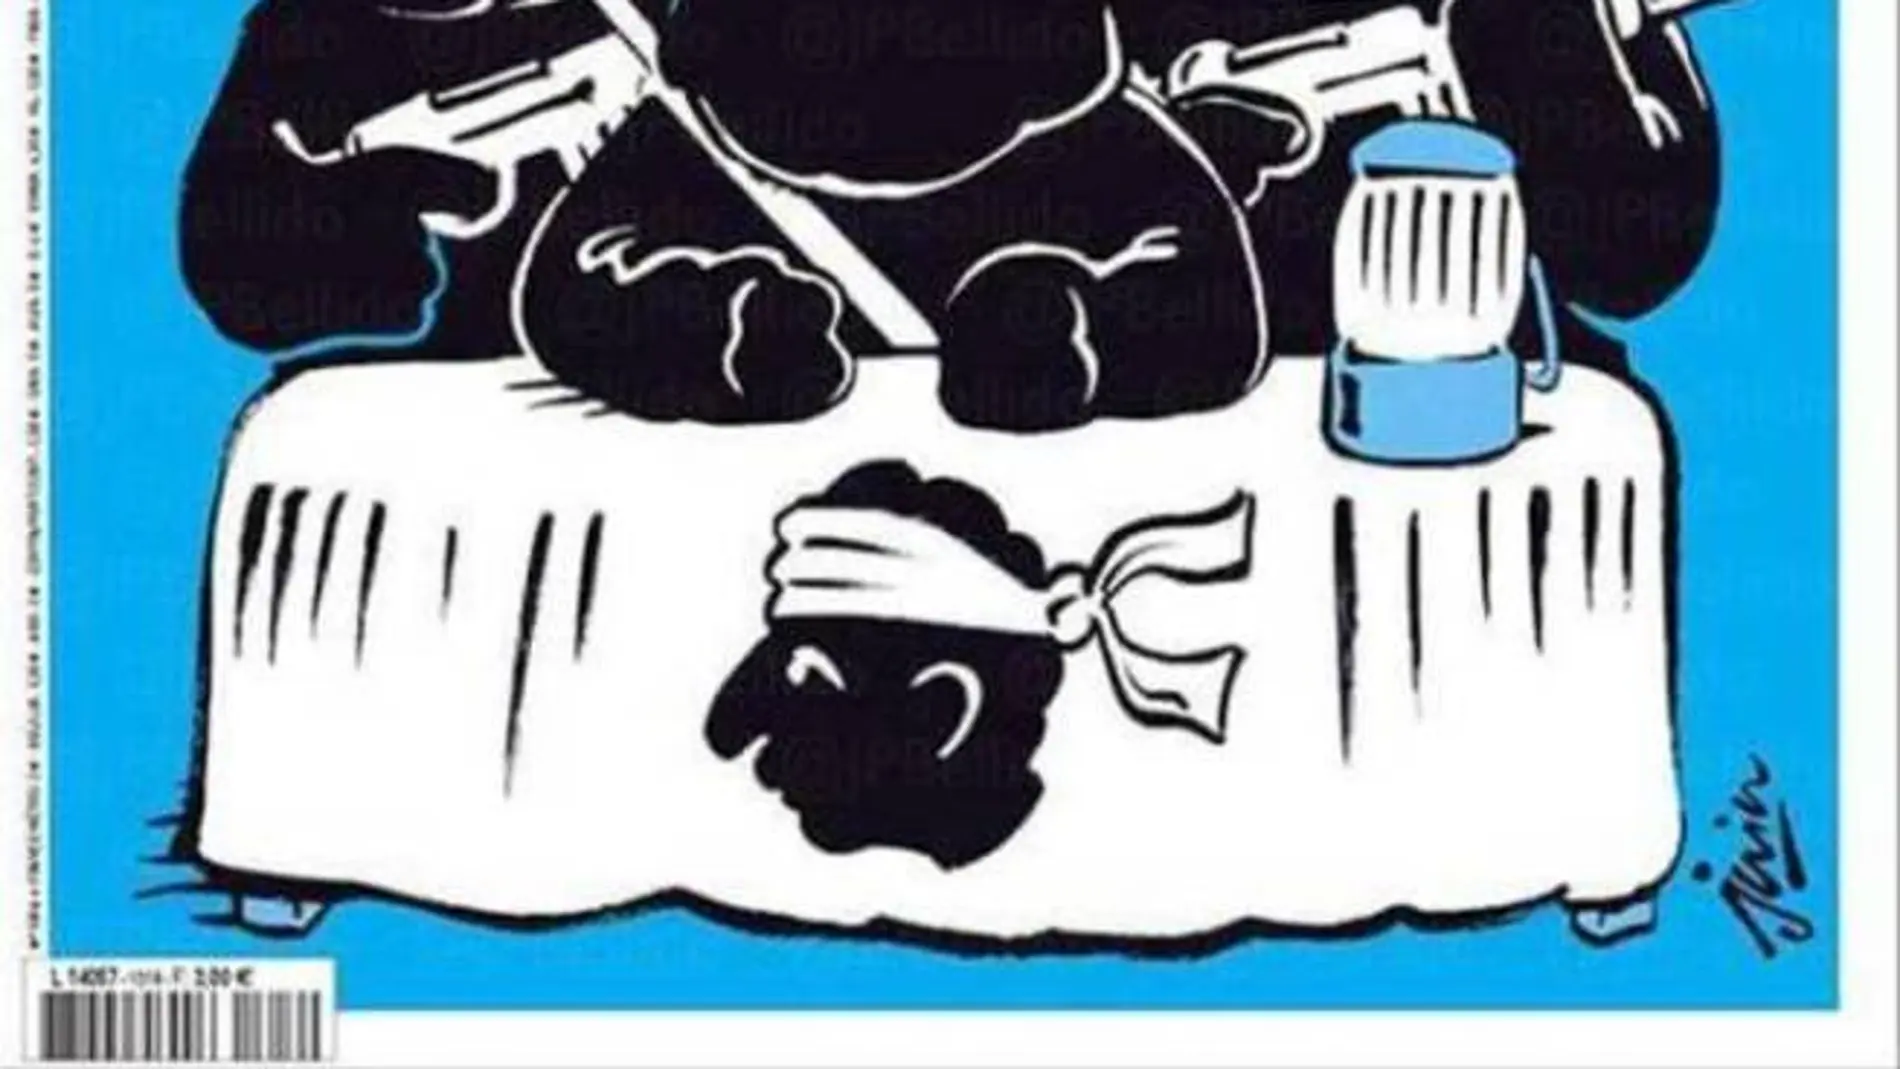 Imagen de la portada de "Charlie Hebdo"